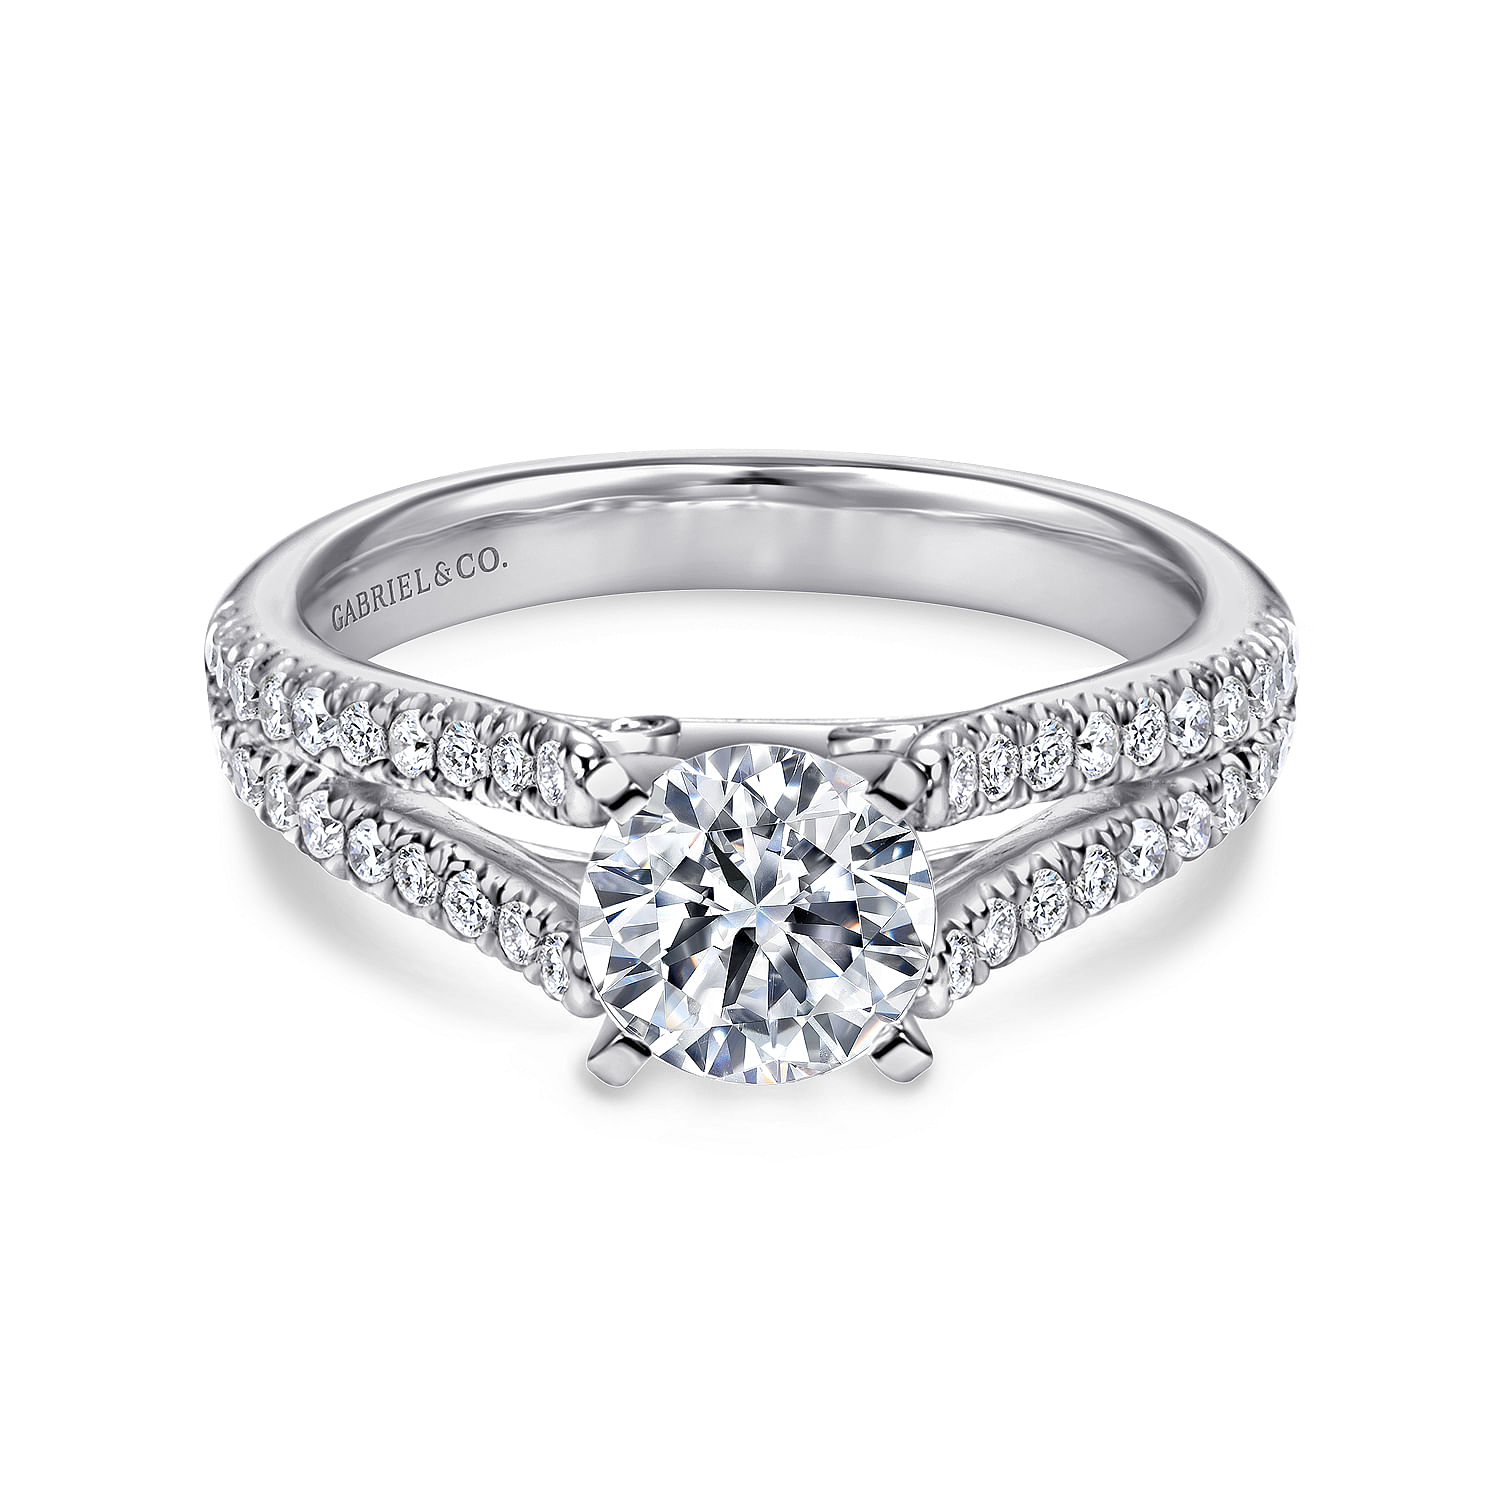 Janelle---14K-White-Gold-Round-Split-Shank-Diamond-Engagement-Ring1